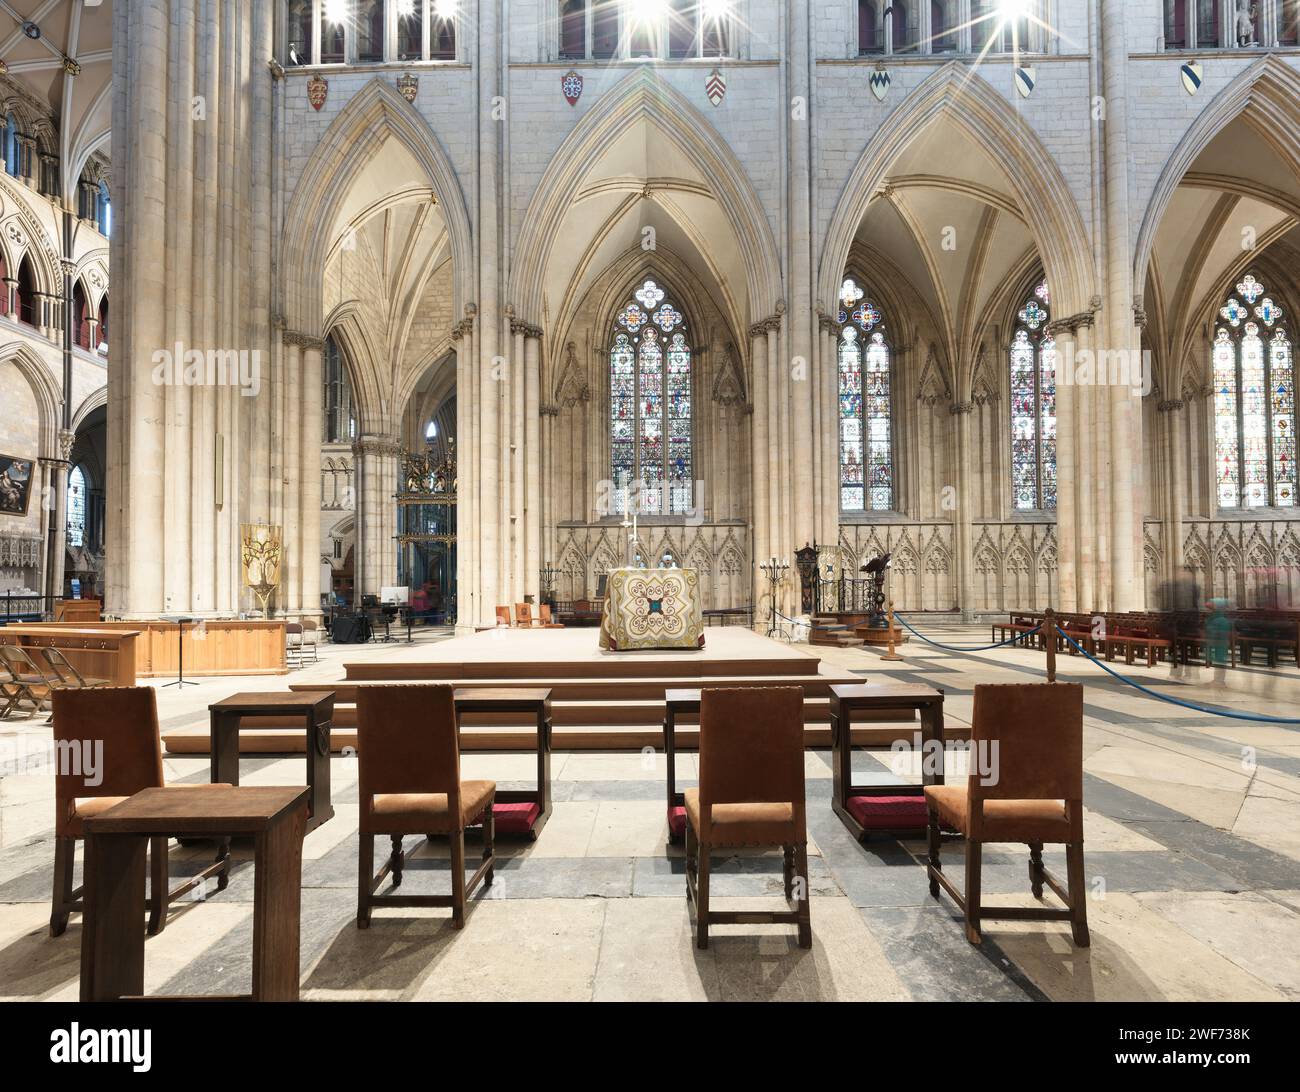 Autel principal dans la nef de la cathédrale de york, Angleterre. Banque D'Images